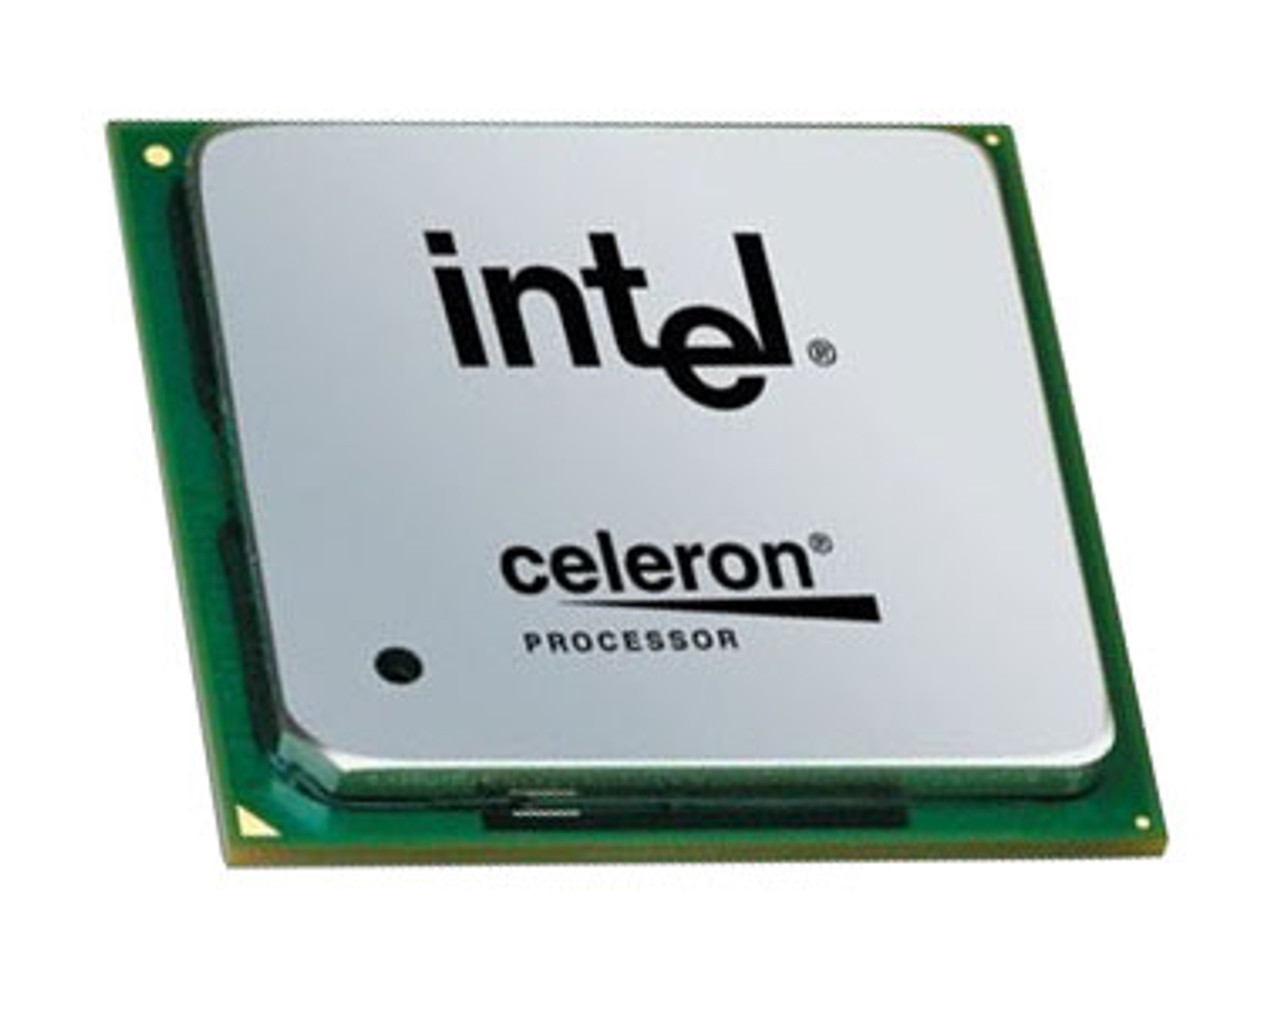 SL7TN - Intel Celeron D 335J 2.80GHz 533MHz FSB 256KB L2 Cache Socket PLGA775 Processor